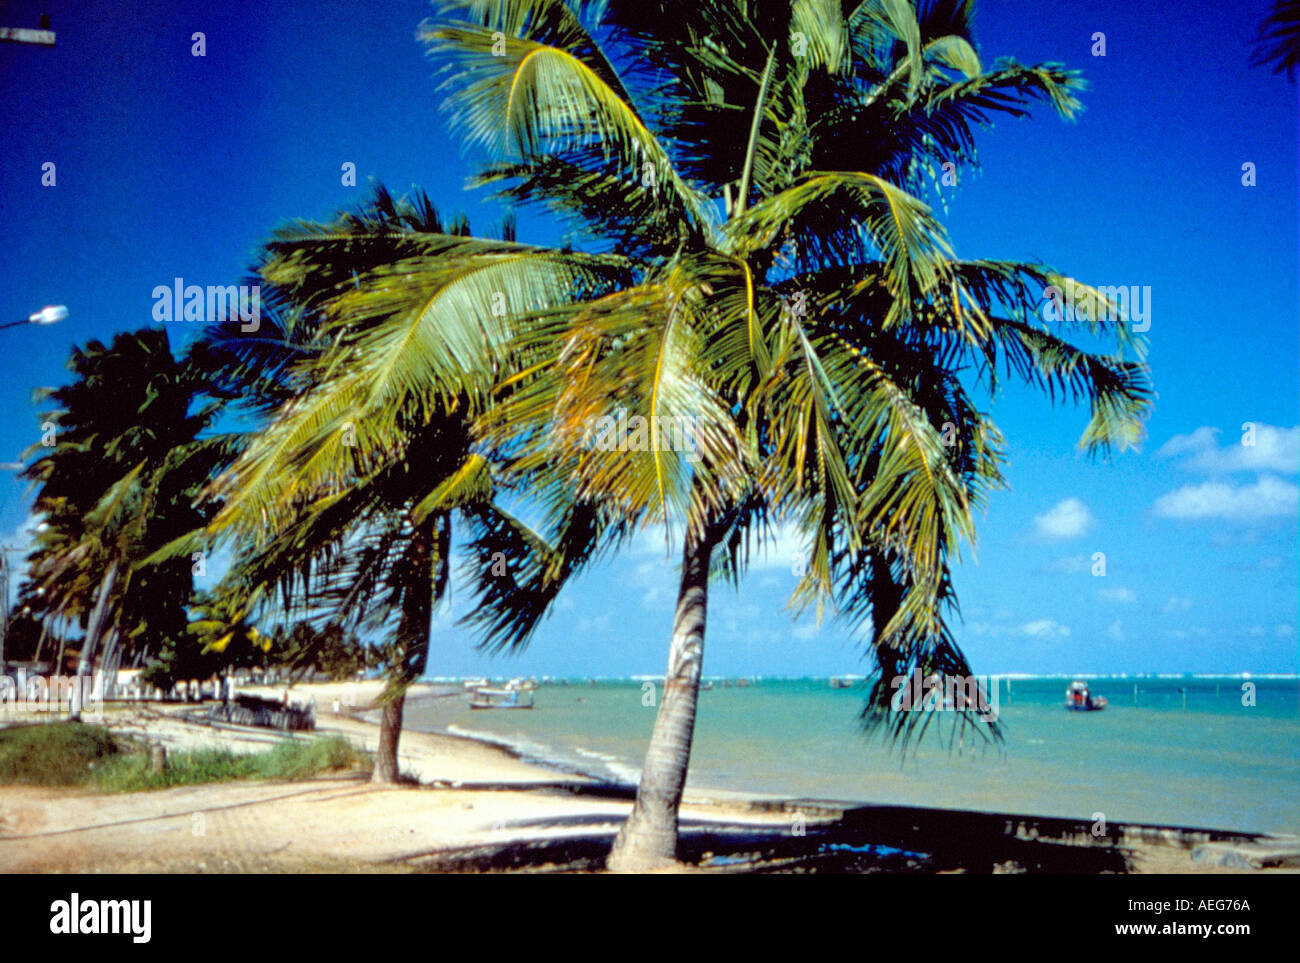 Reisen Sie Brasilien Bahia Strand Tropen Küste Ufer Strand Urlaub Urlaub Kokosnuss Baum Palm Bäume Küstenregion warmen heißen feuchten sunn Stockfoto